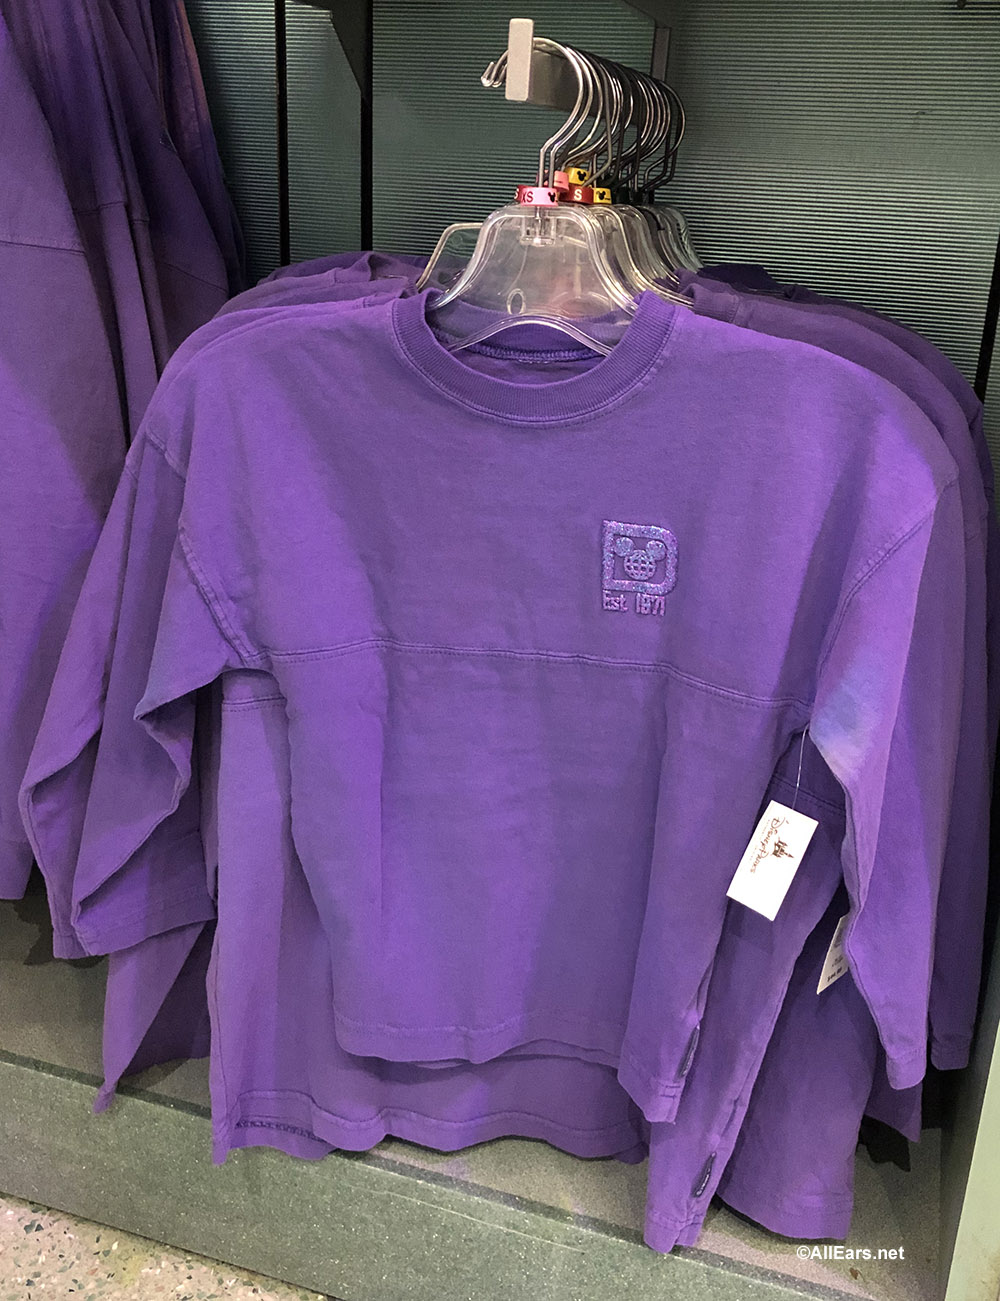 disneyland spirit jersey purple